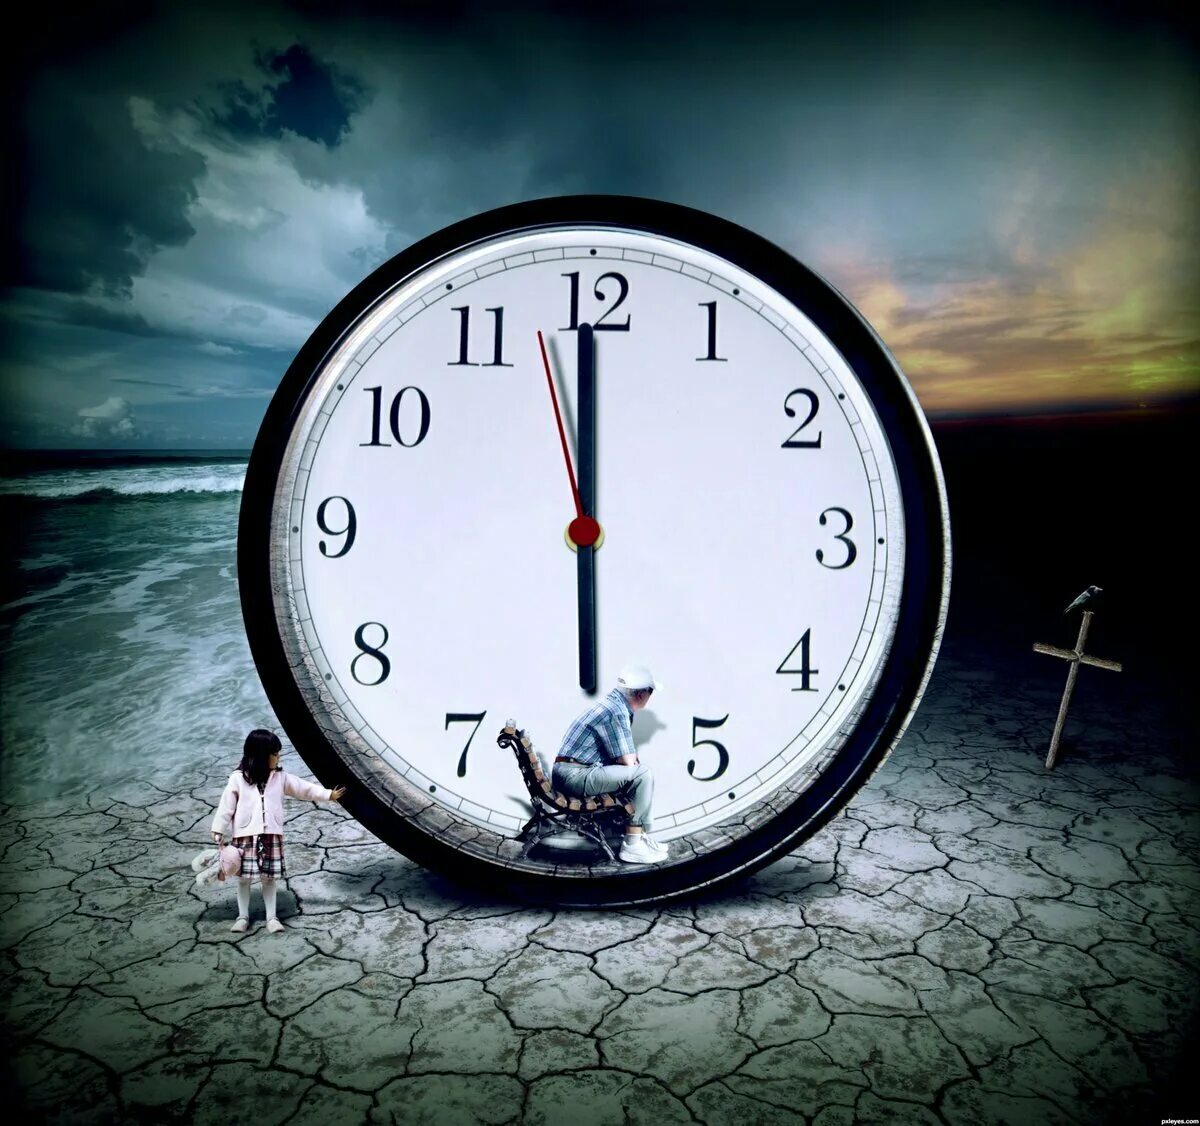 Время уходит быстро. Часы бегут. А время уходит. Изображение времени. Медленные часы.